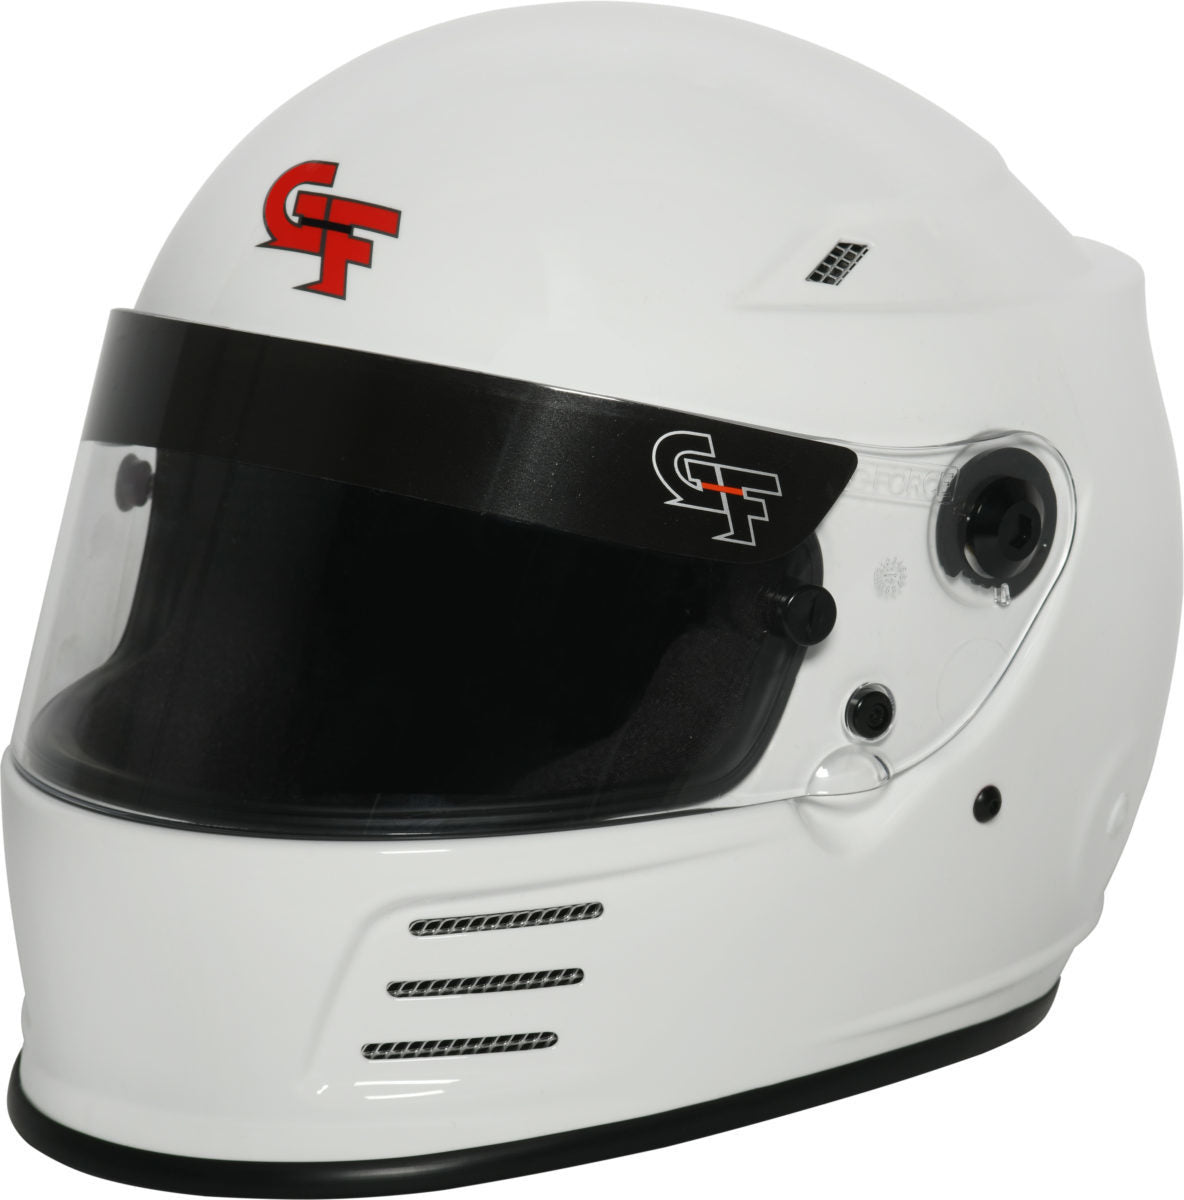 Helmet Revo X-Large White SA2020